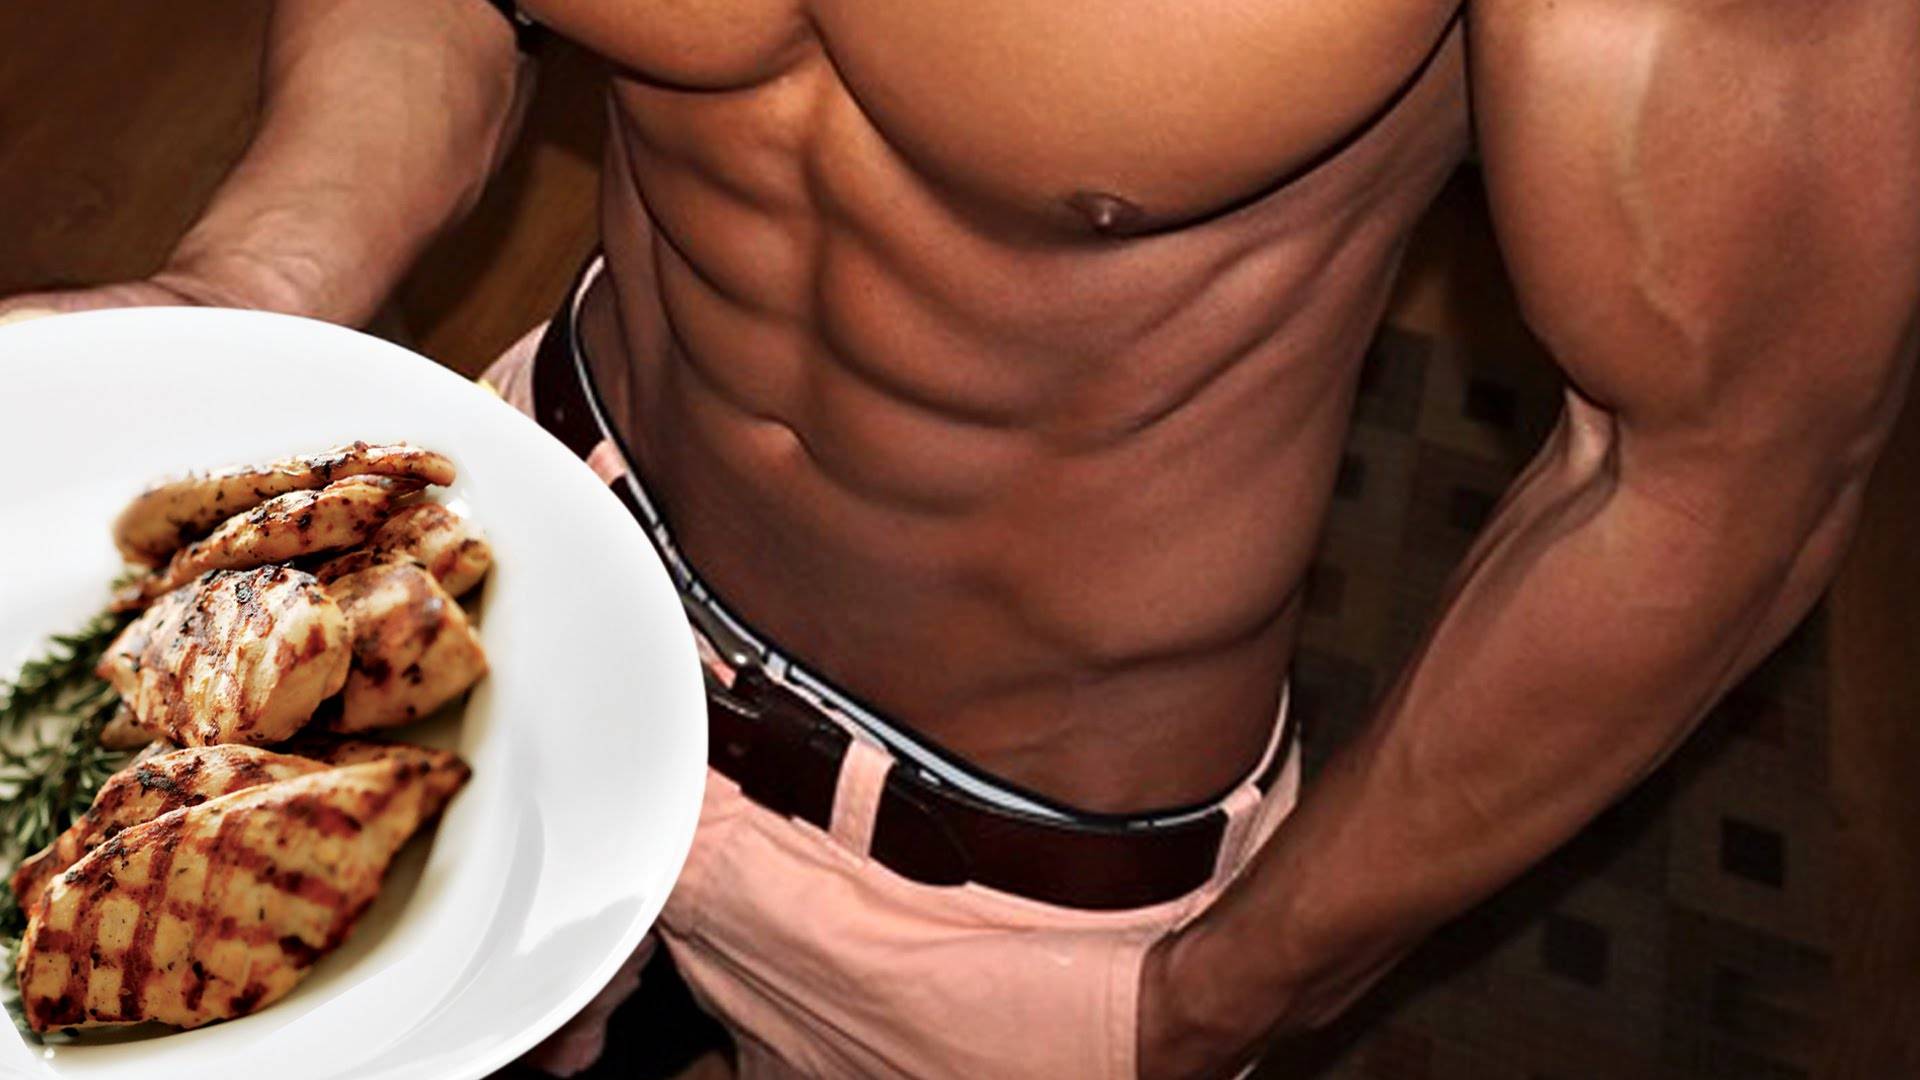 Питание на сушке тела: продукты для диеты и примеры меню для жиросжигания для мужчин и женщин